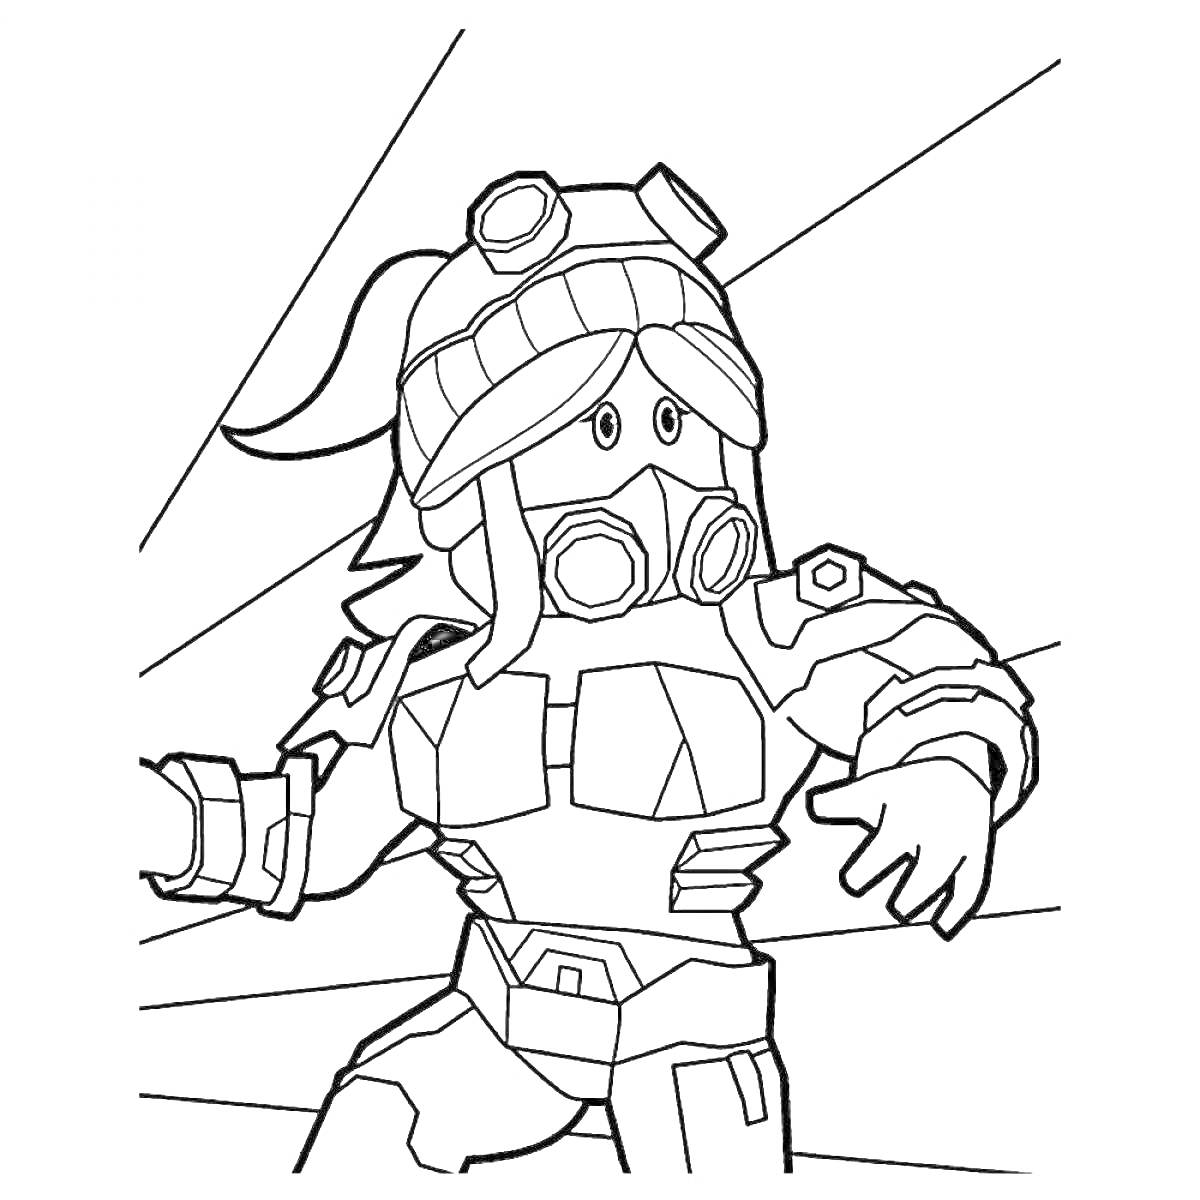 Раскраска Персонаж Roblox в защитном костюме с маской и очками на фоне линий